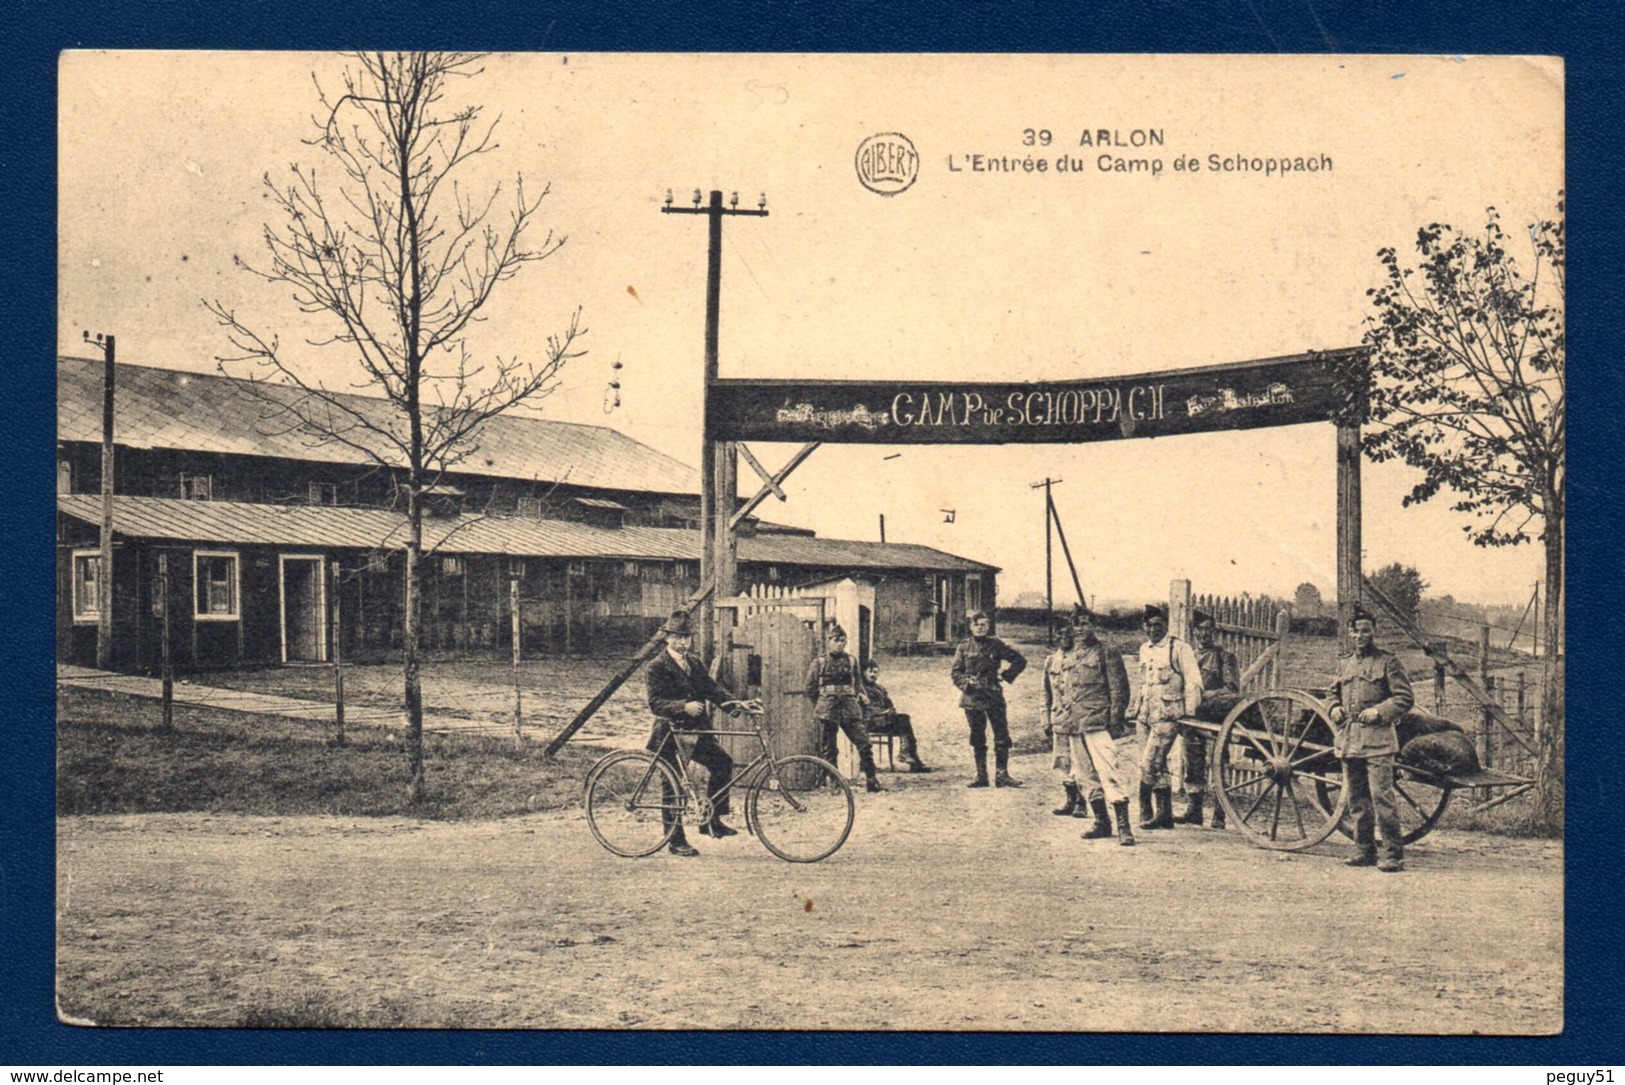 Arlon. Entrée Du Camp De Schoppach. Soldats Et Civil à Vélo.1923 - Aarlen